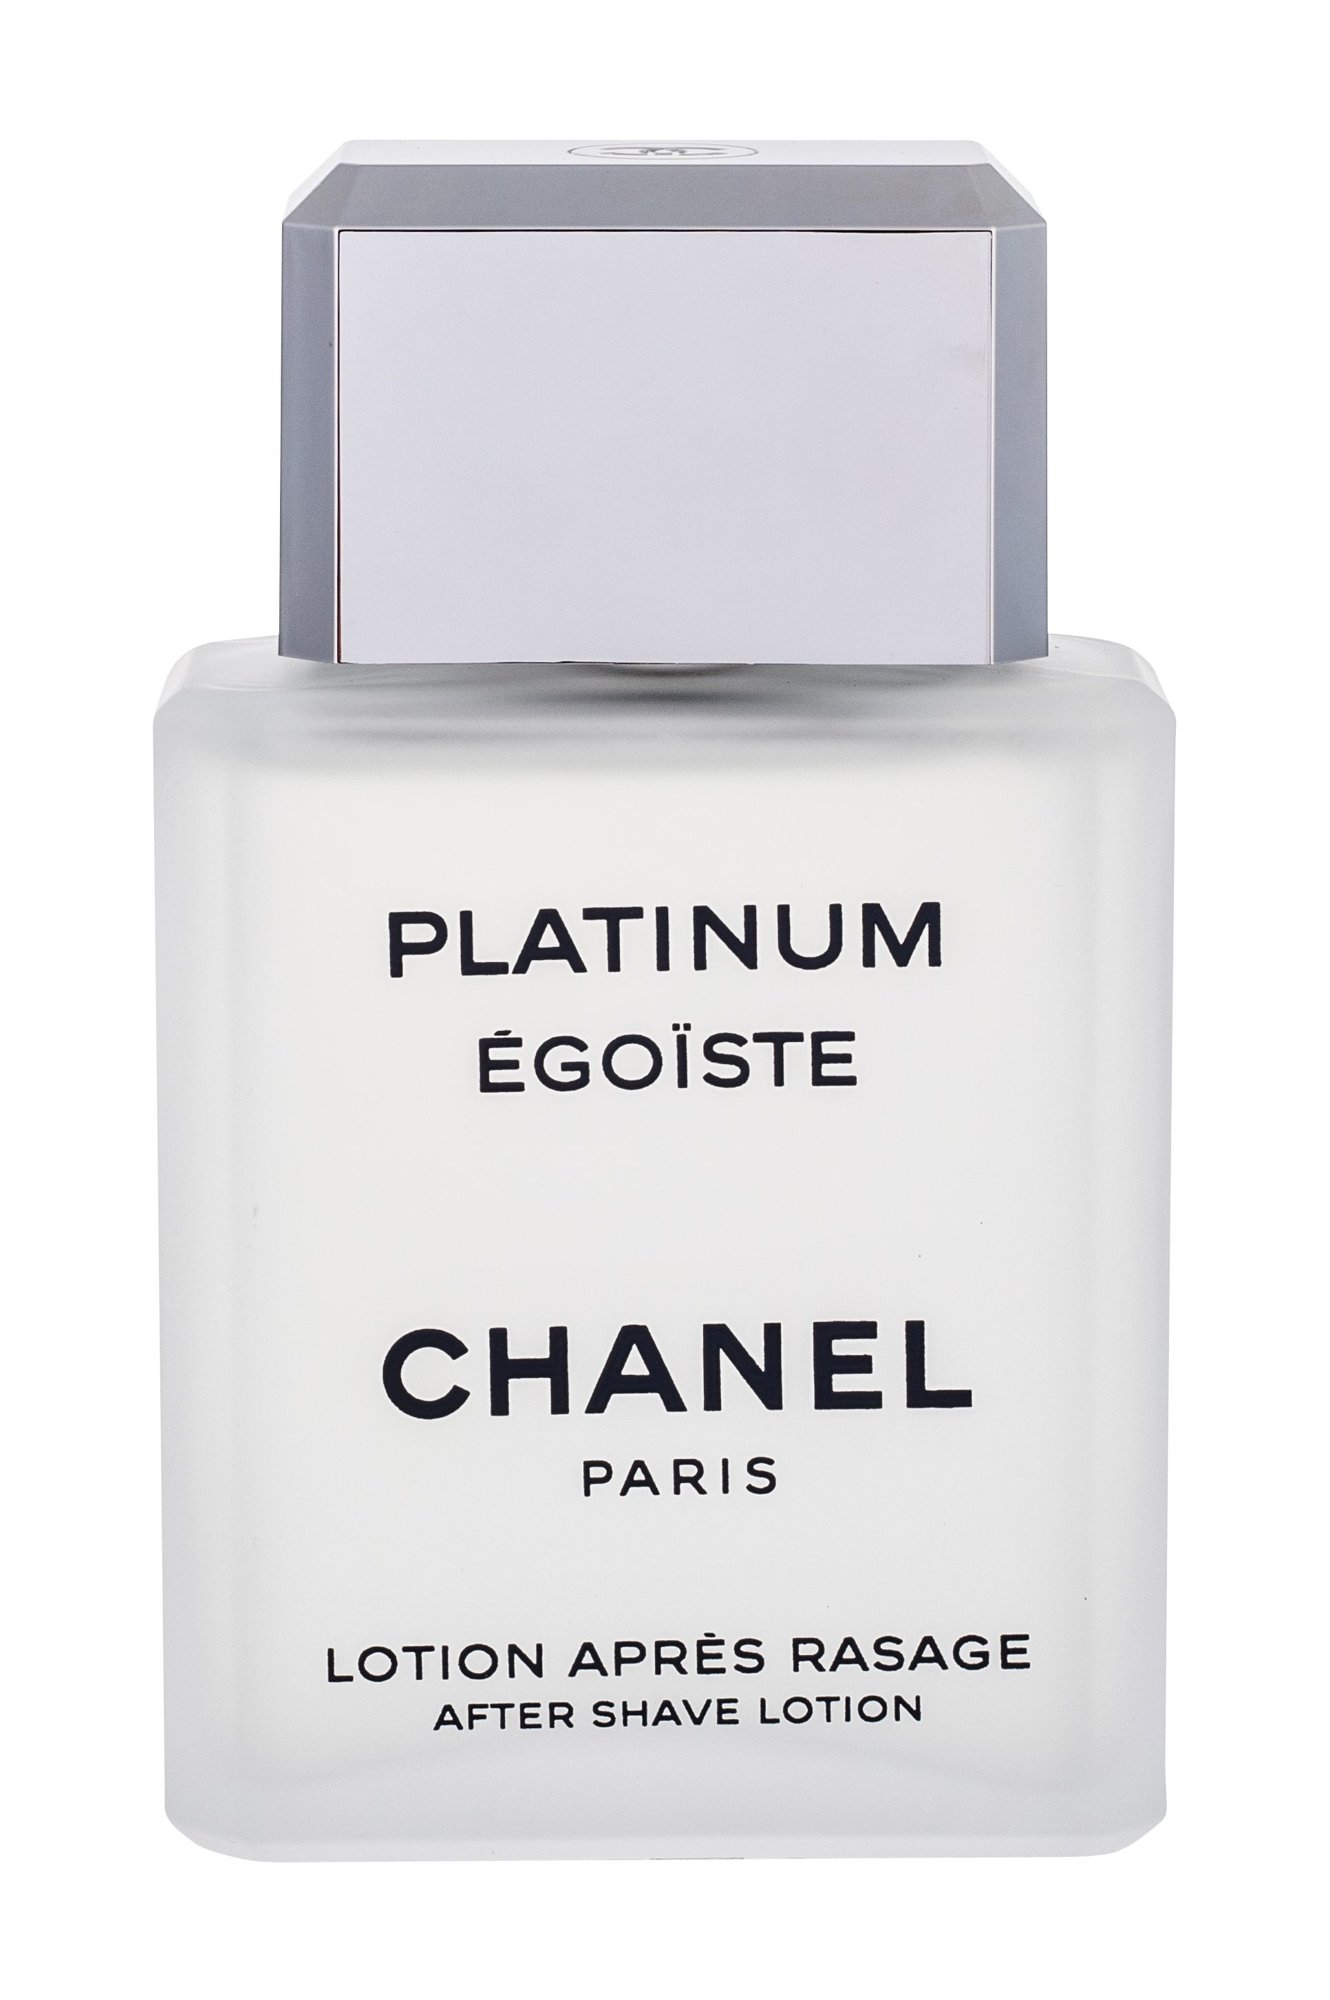 Chanel Egoiste Platinum 100ml vanduo po skutimosi